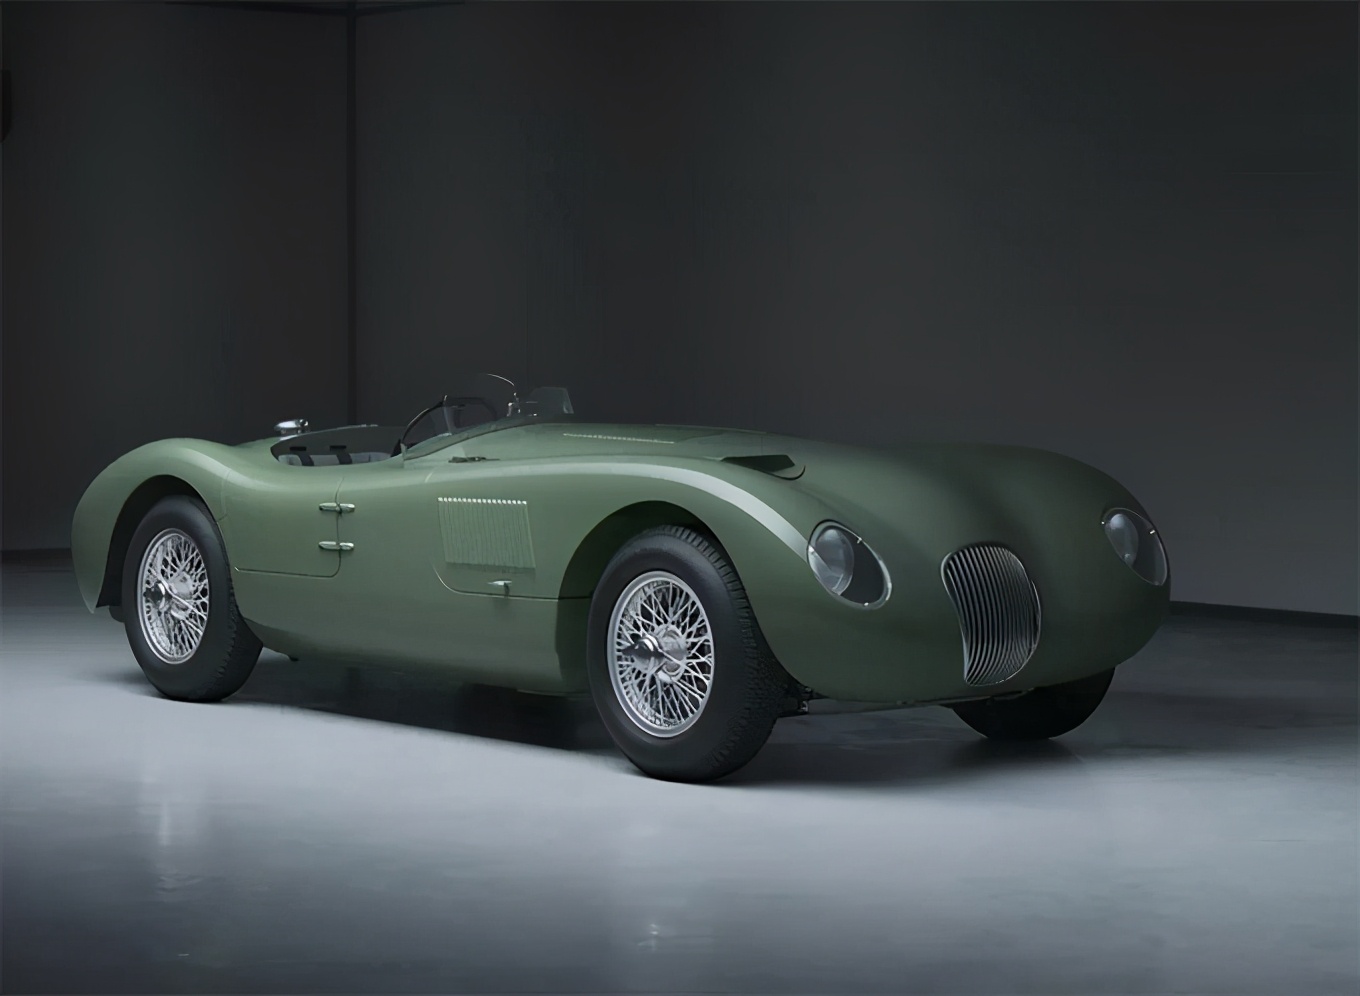 1951年,捷豹c-type正式亮相,为了追求极致的空气动力学表现,该车的